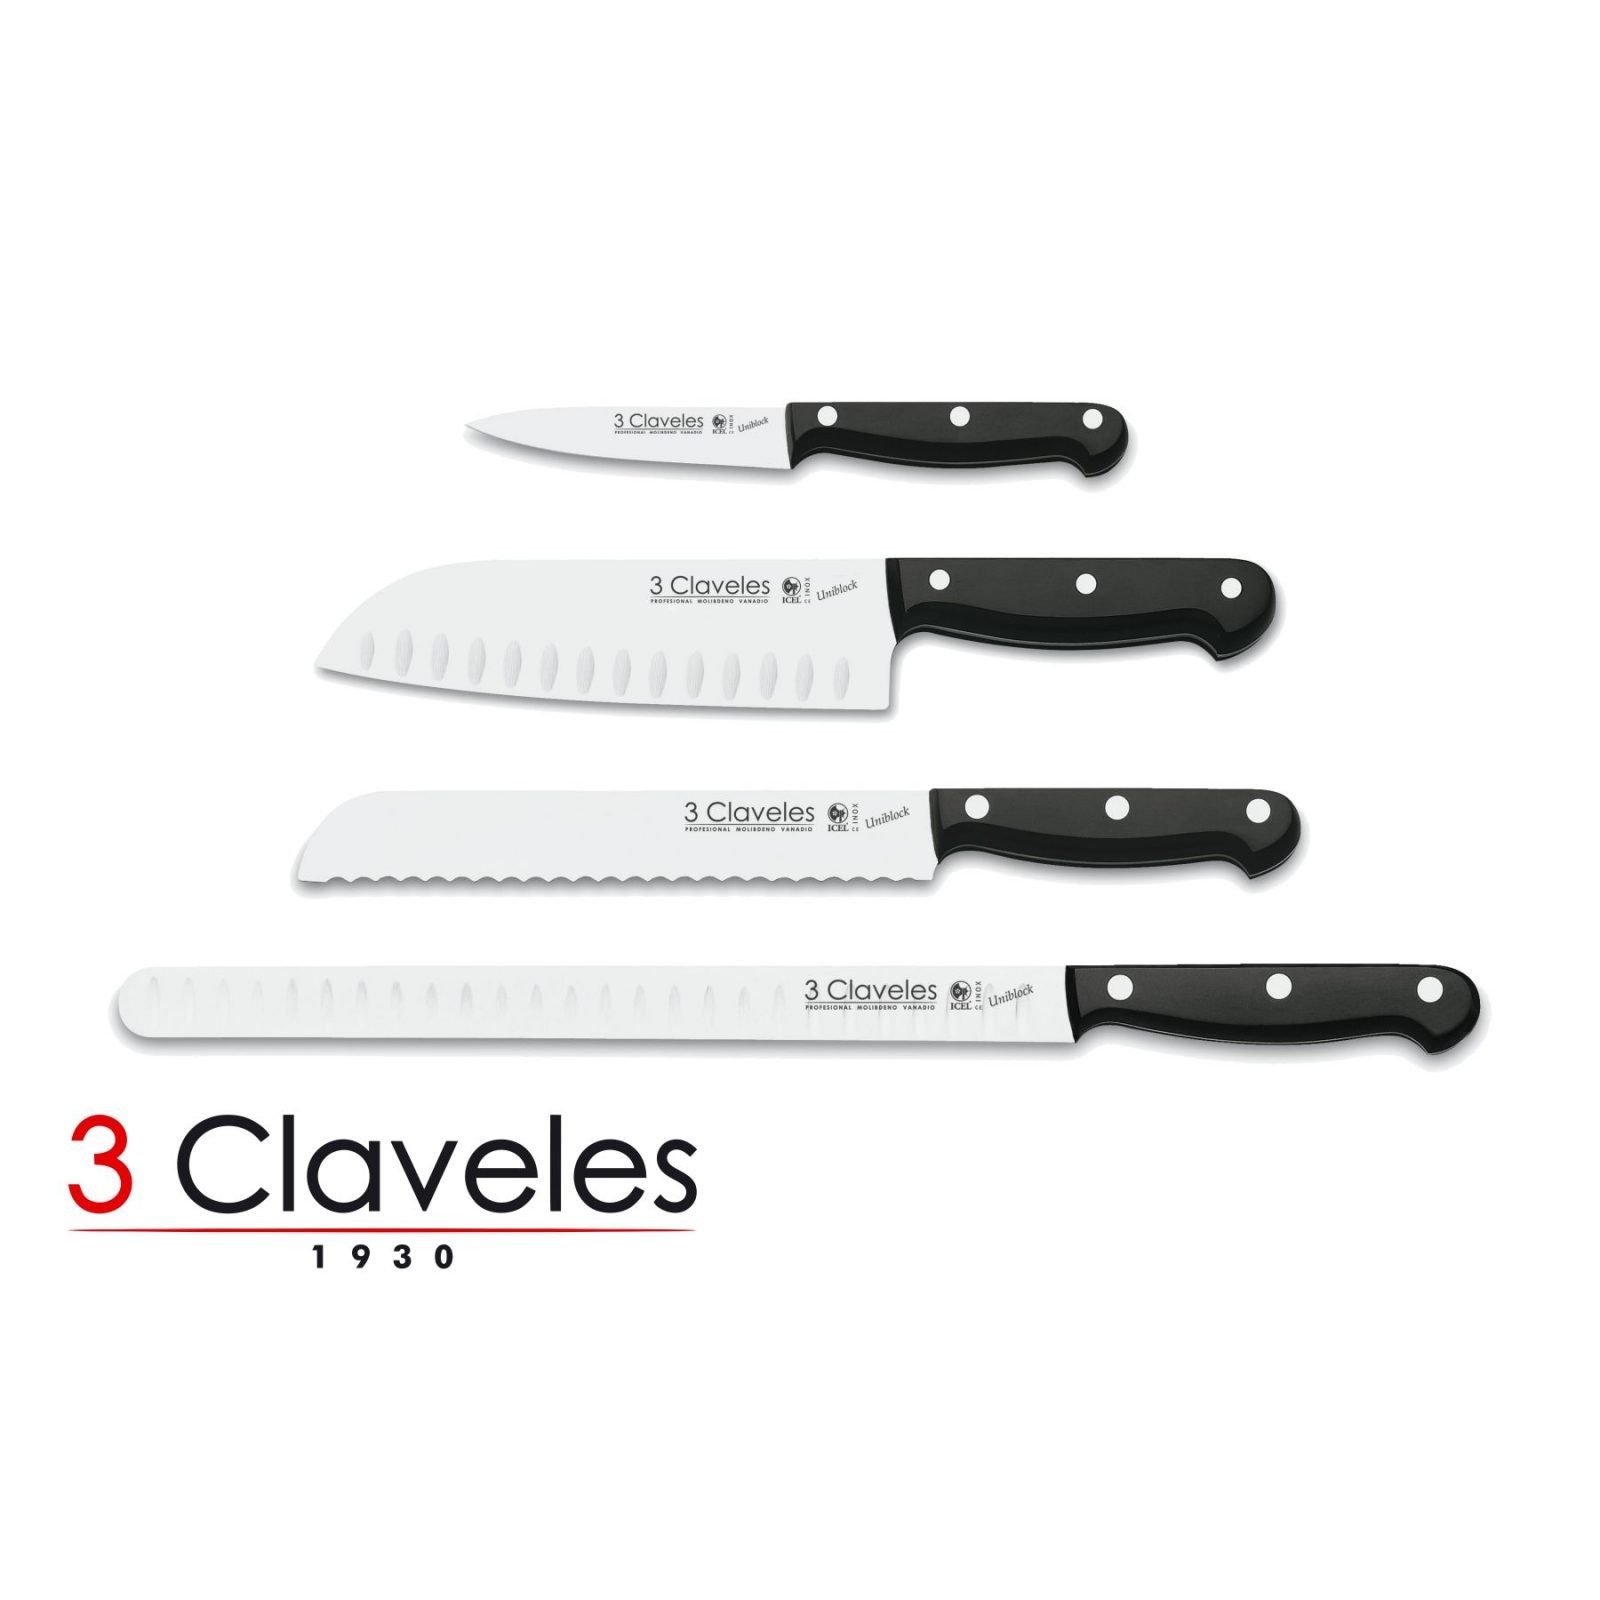 Cuchillos de Cocina Profesionales 3 Claveles